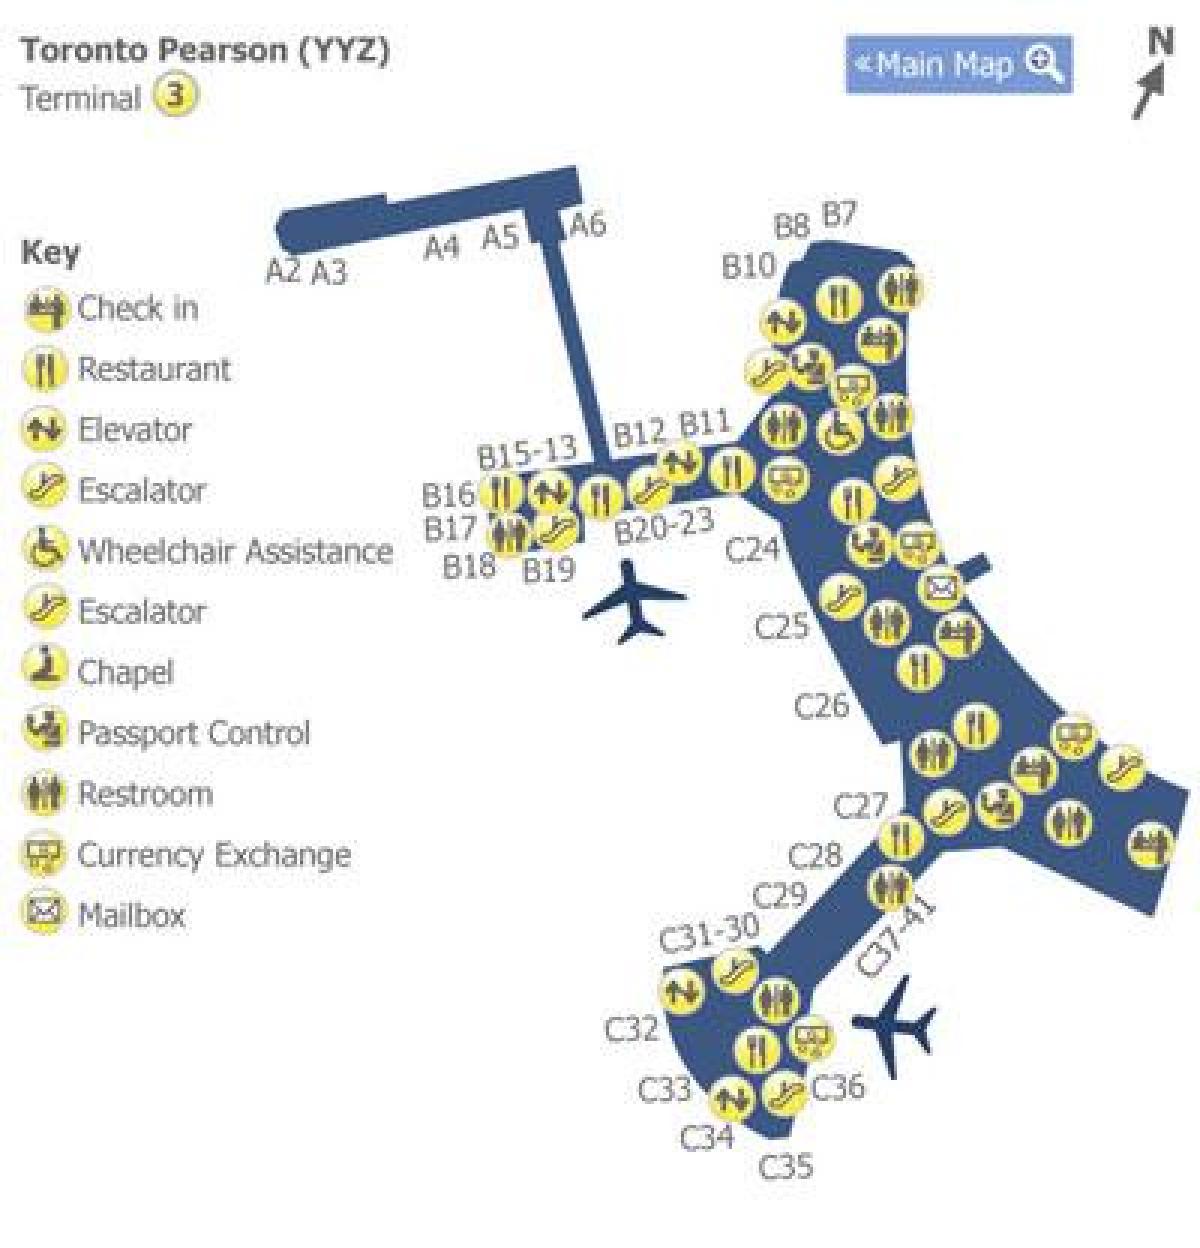 नक्शे के टोरंटो पियर्सन हवाई अड्डे के टर्मिनल 3